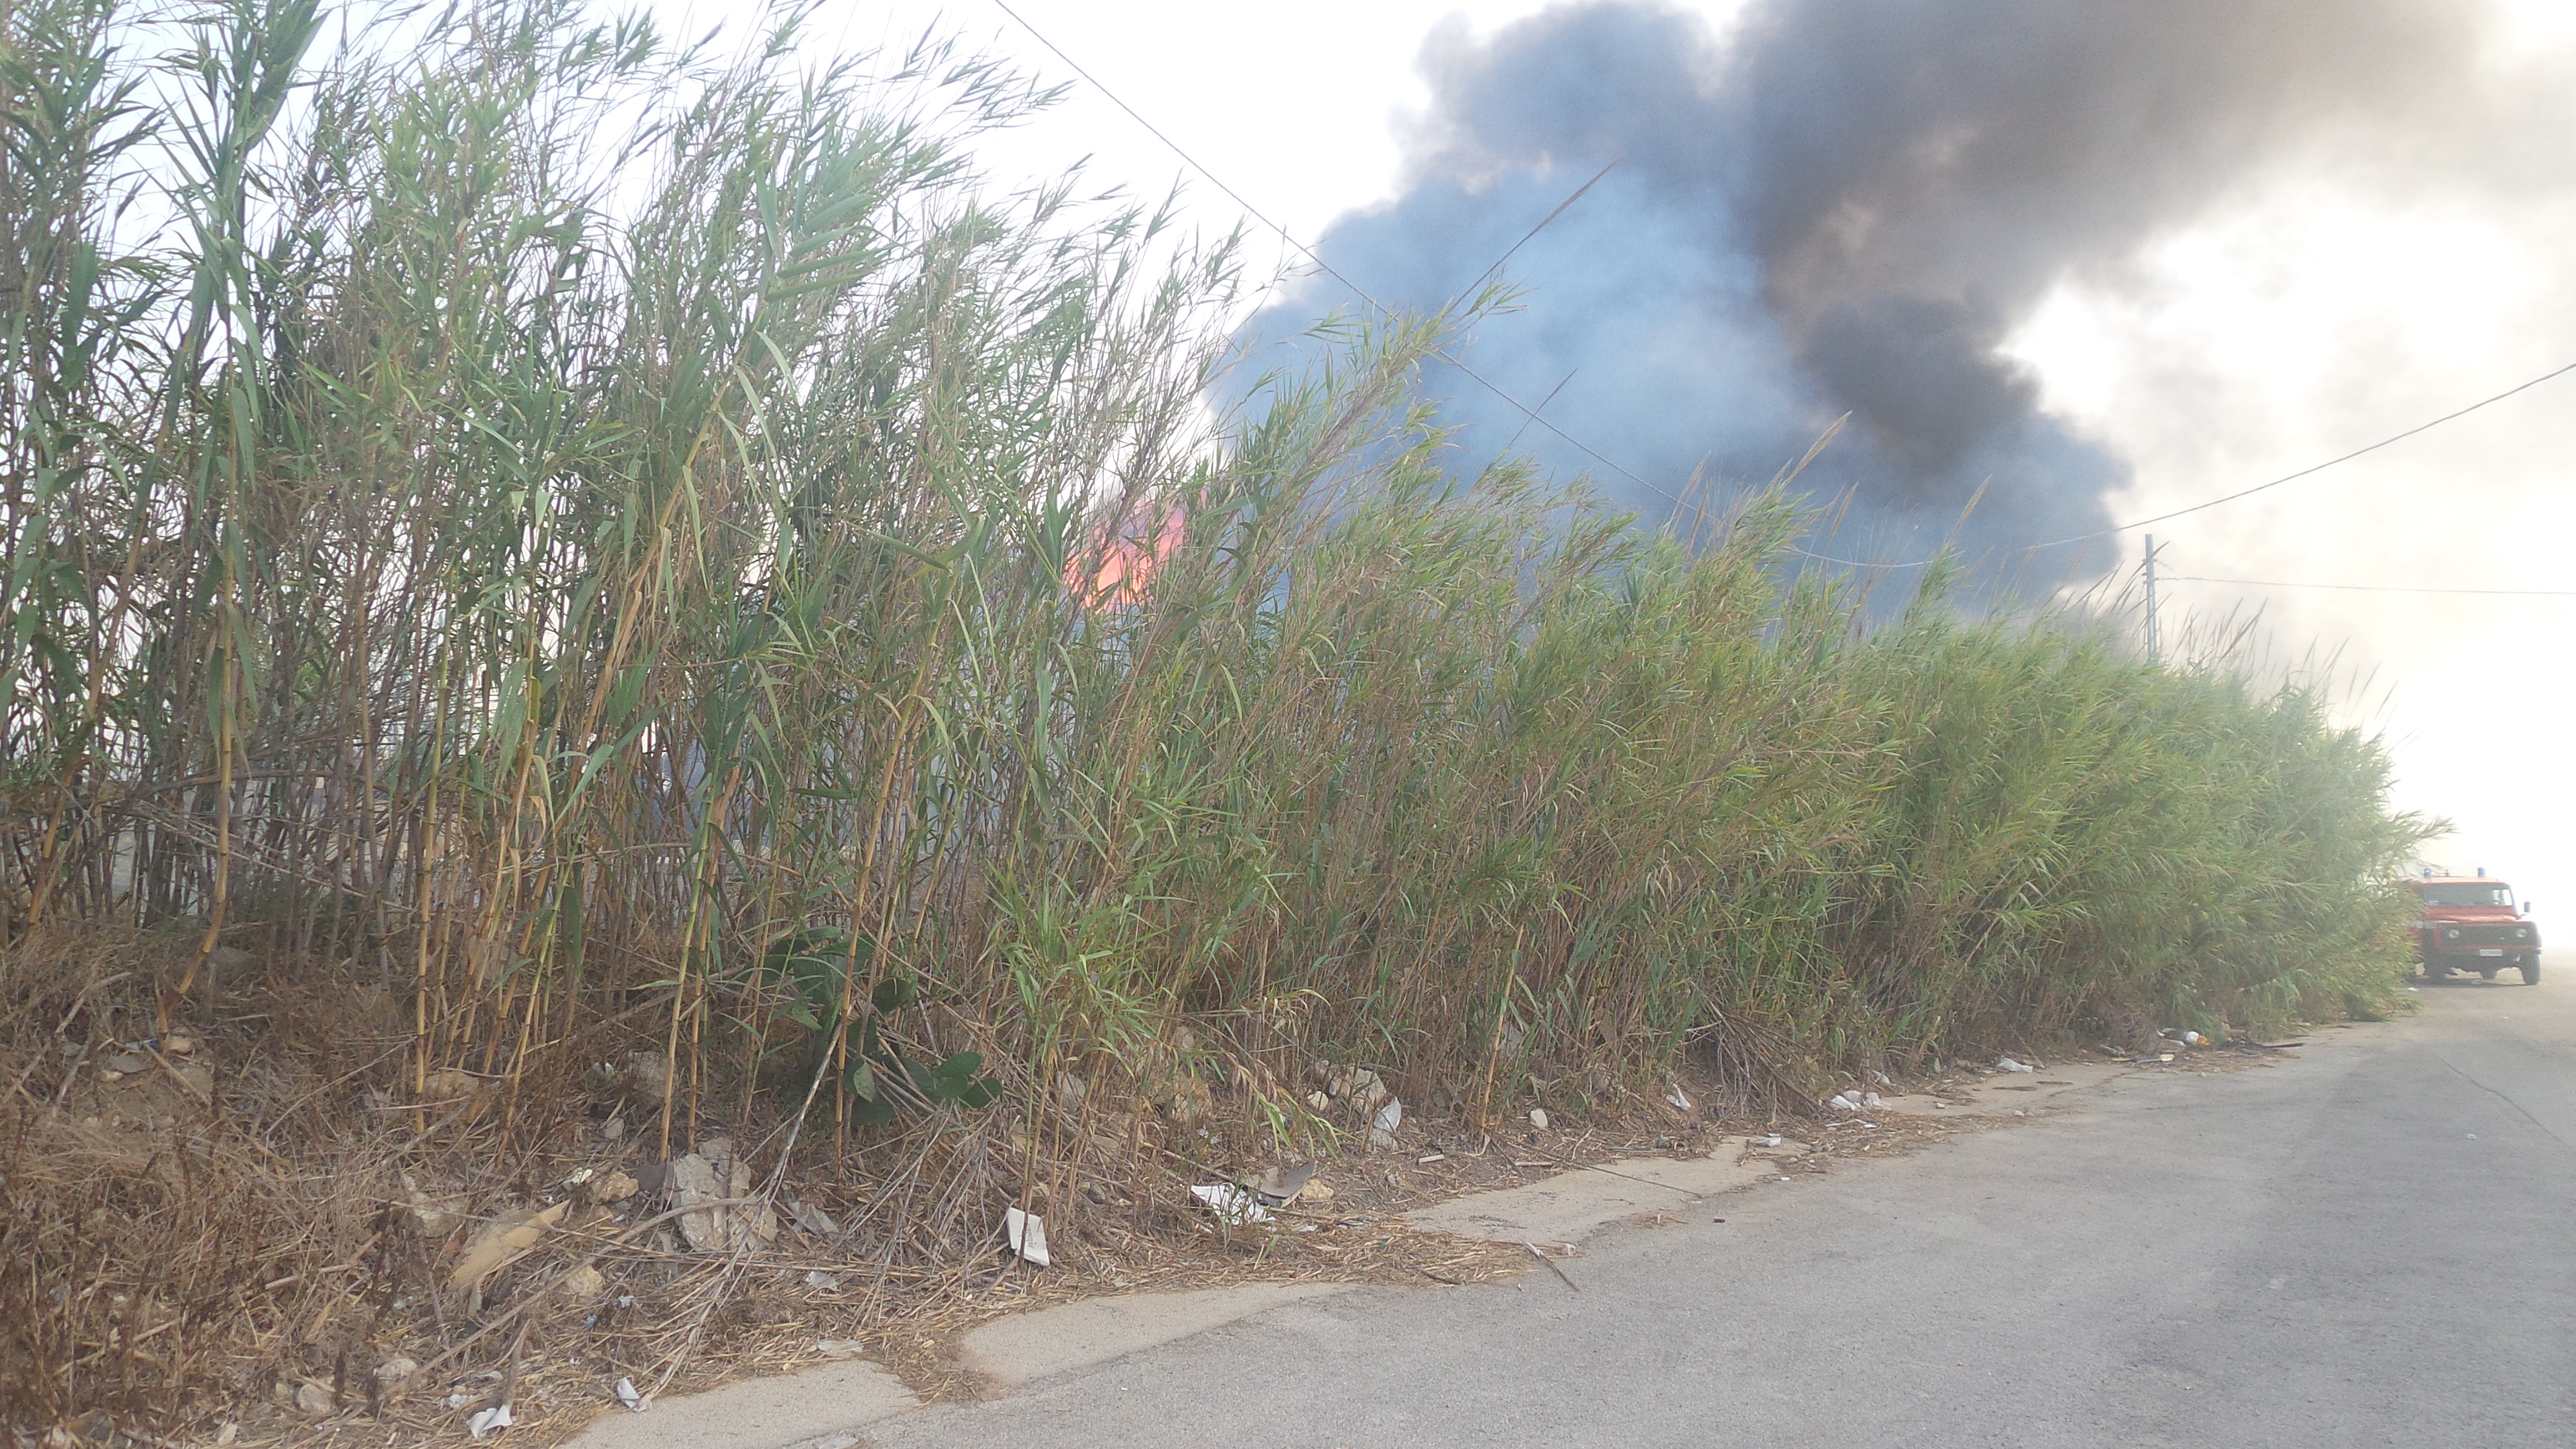  Incendio in un casolare lungo la Santa Croce-Punta Secca: nessun danno a persone e serre FOTO